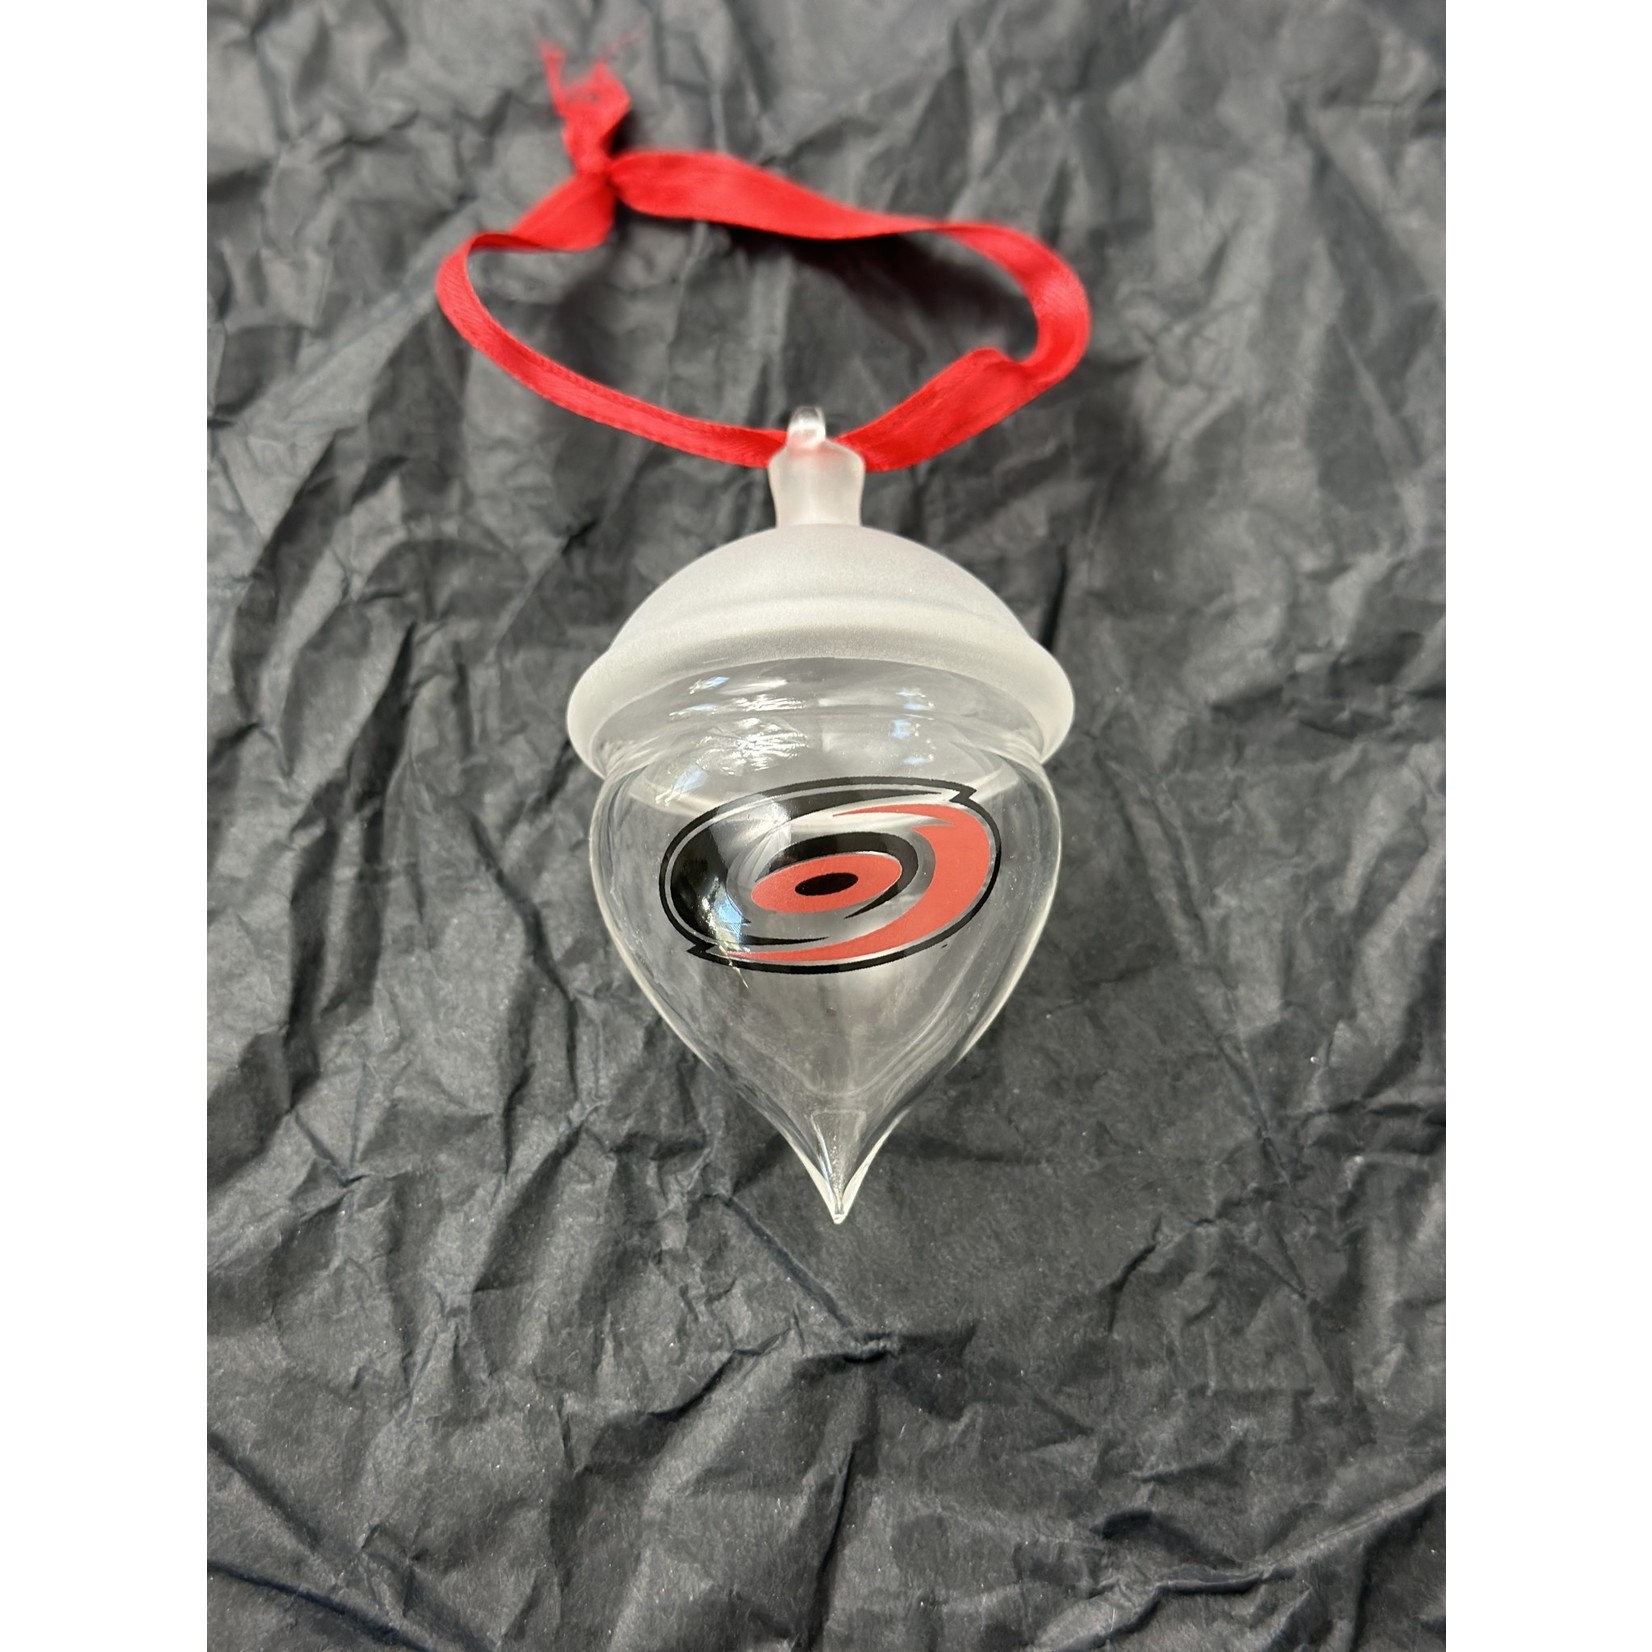 Zacto Glass Zacto Glass Handblown Hurricanes Ornament 3 Designs